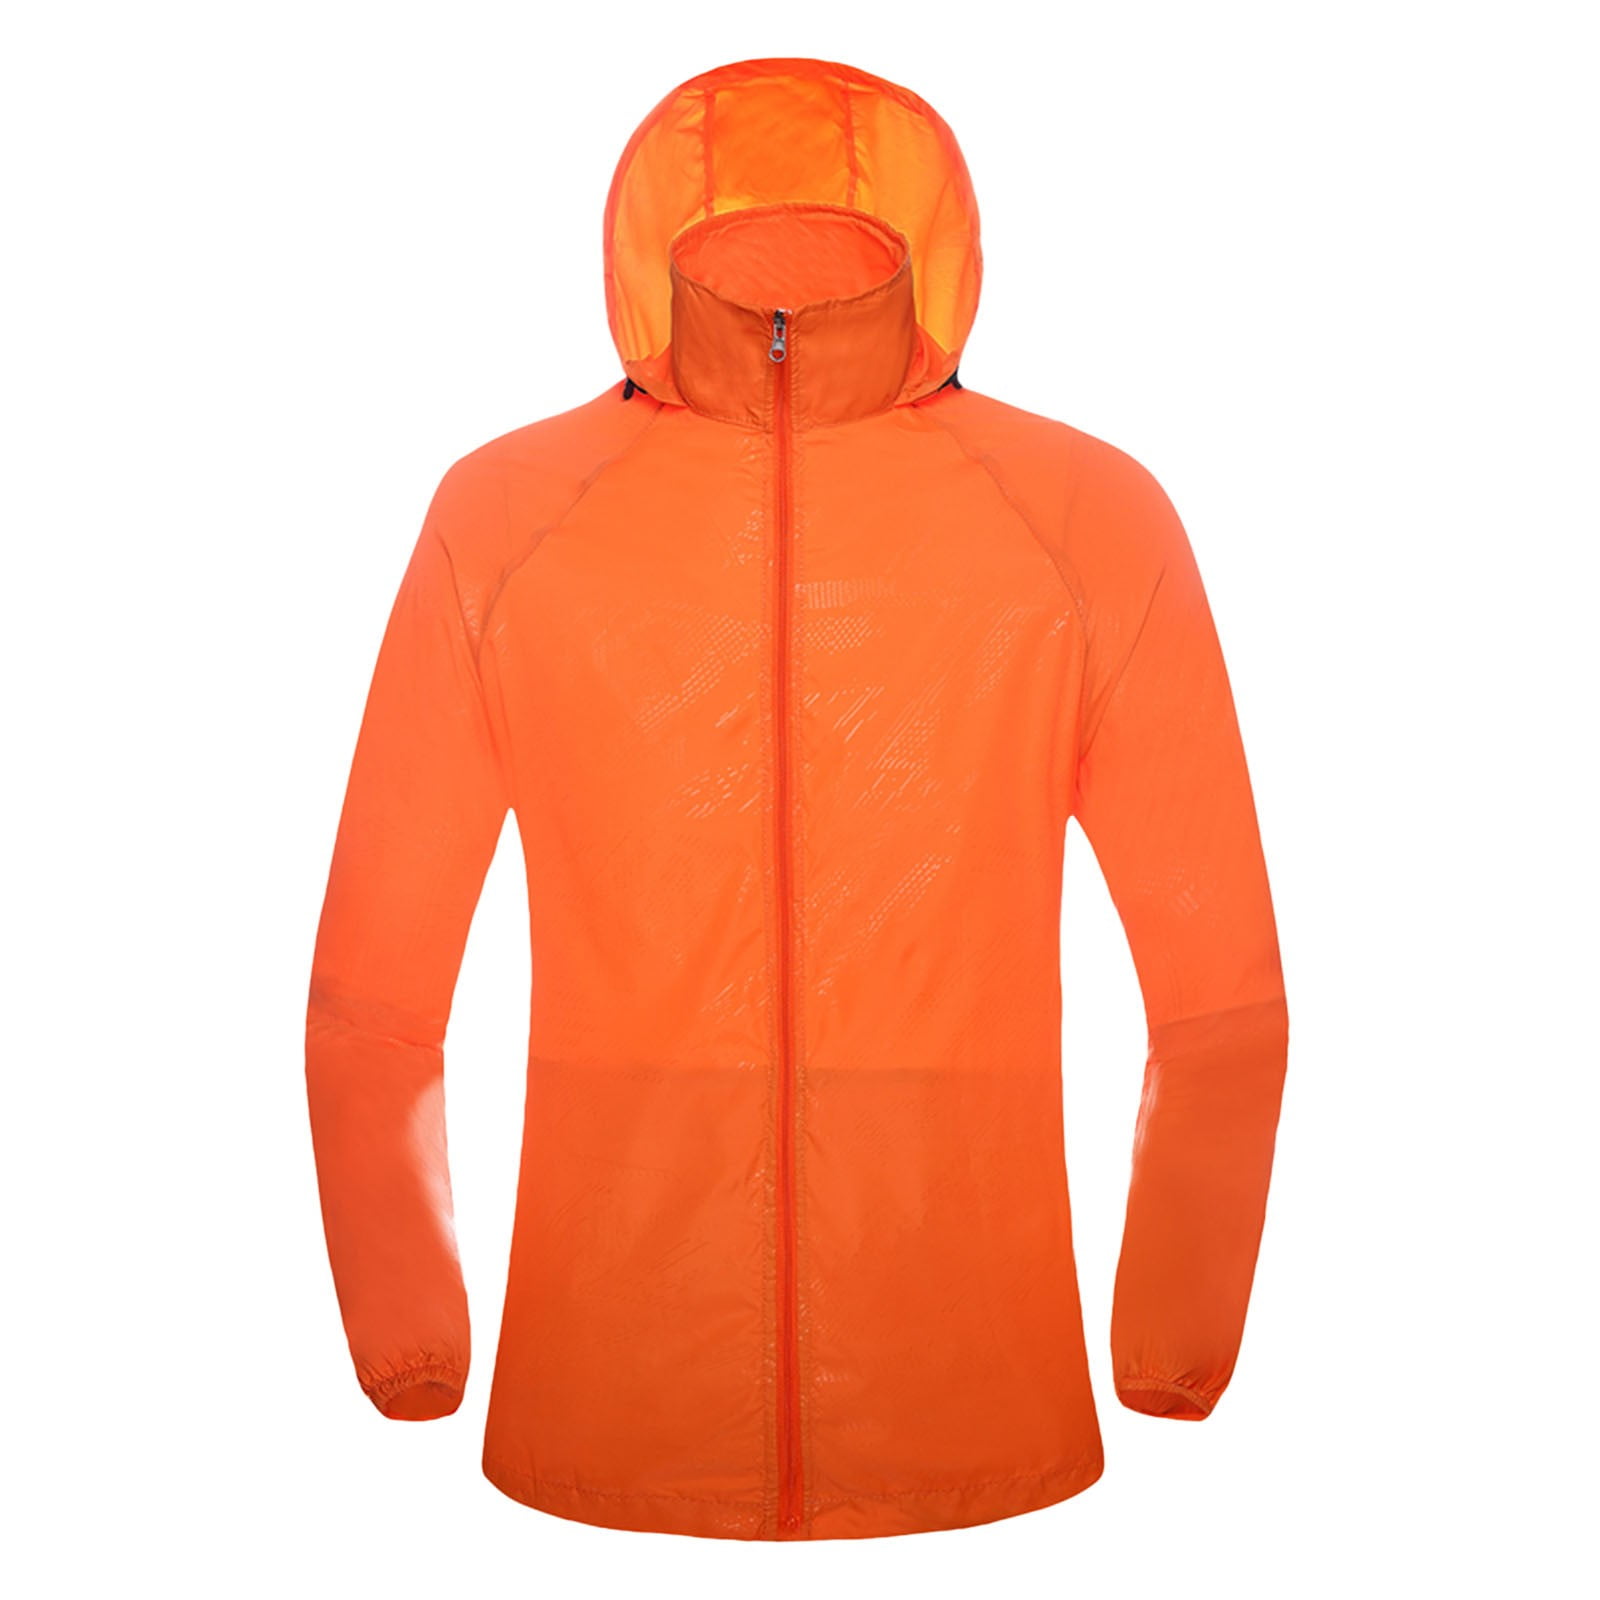 Women coat Women's Men's Casual Jackets Windproof Ultra-Light Rainproof ...